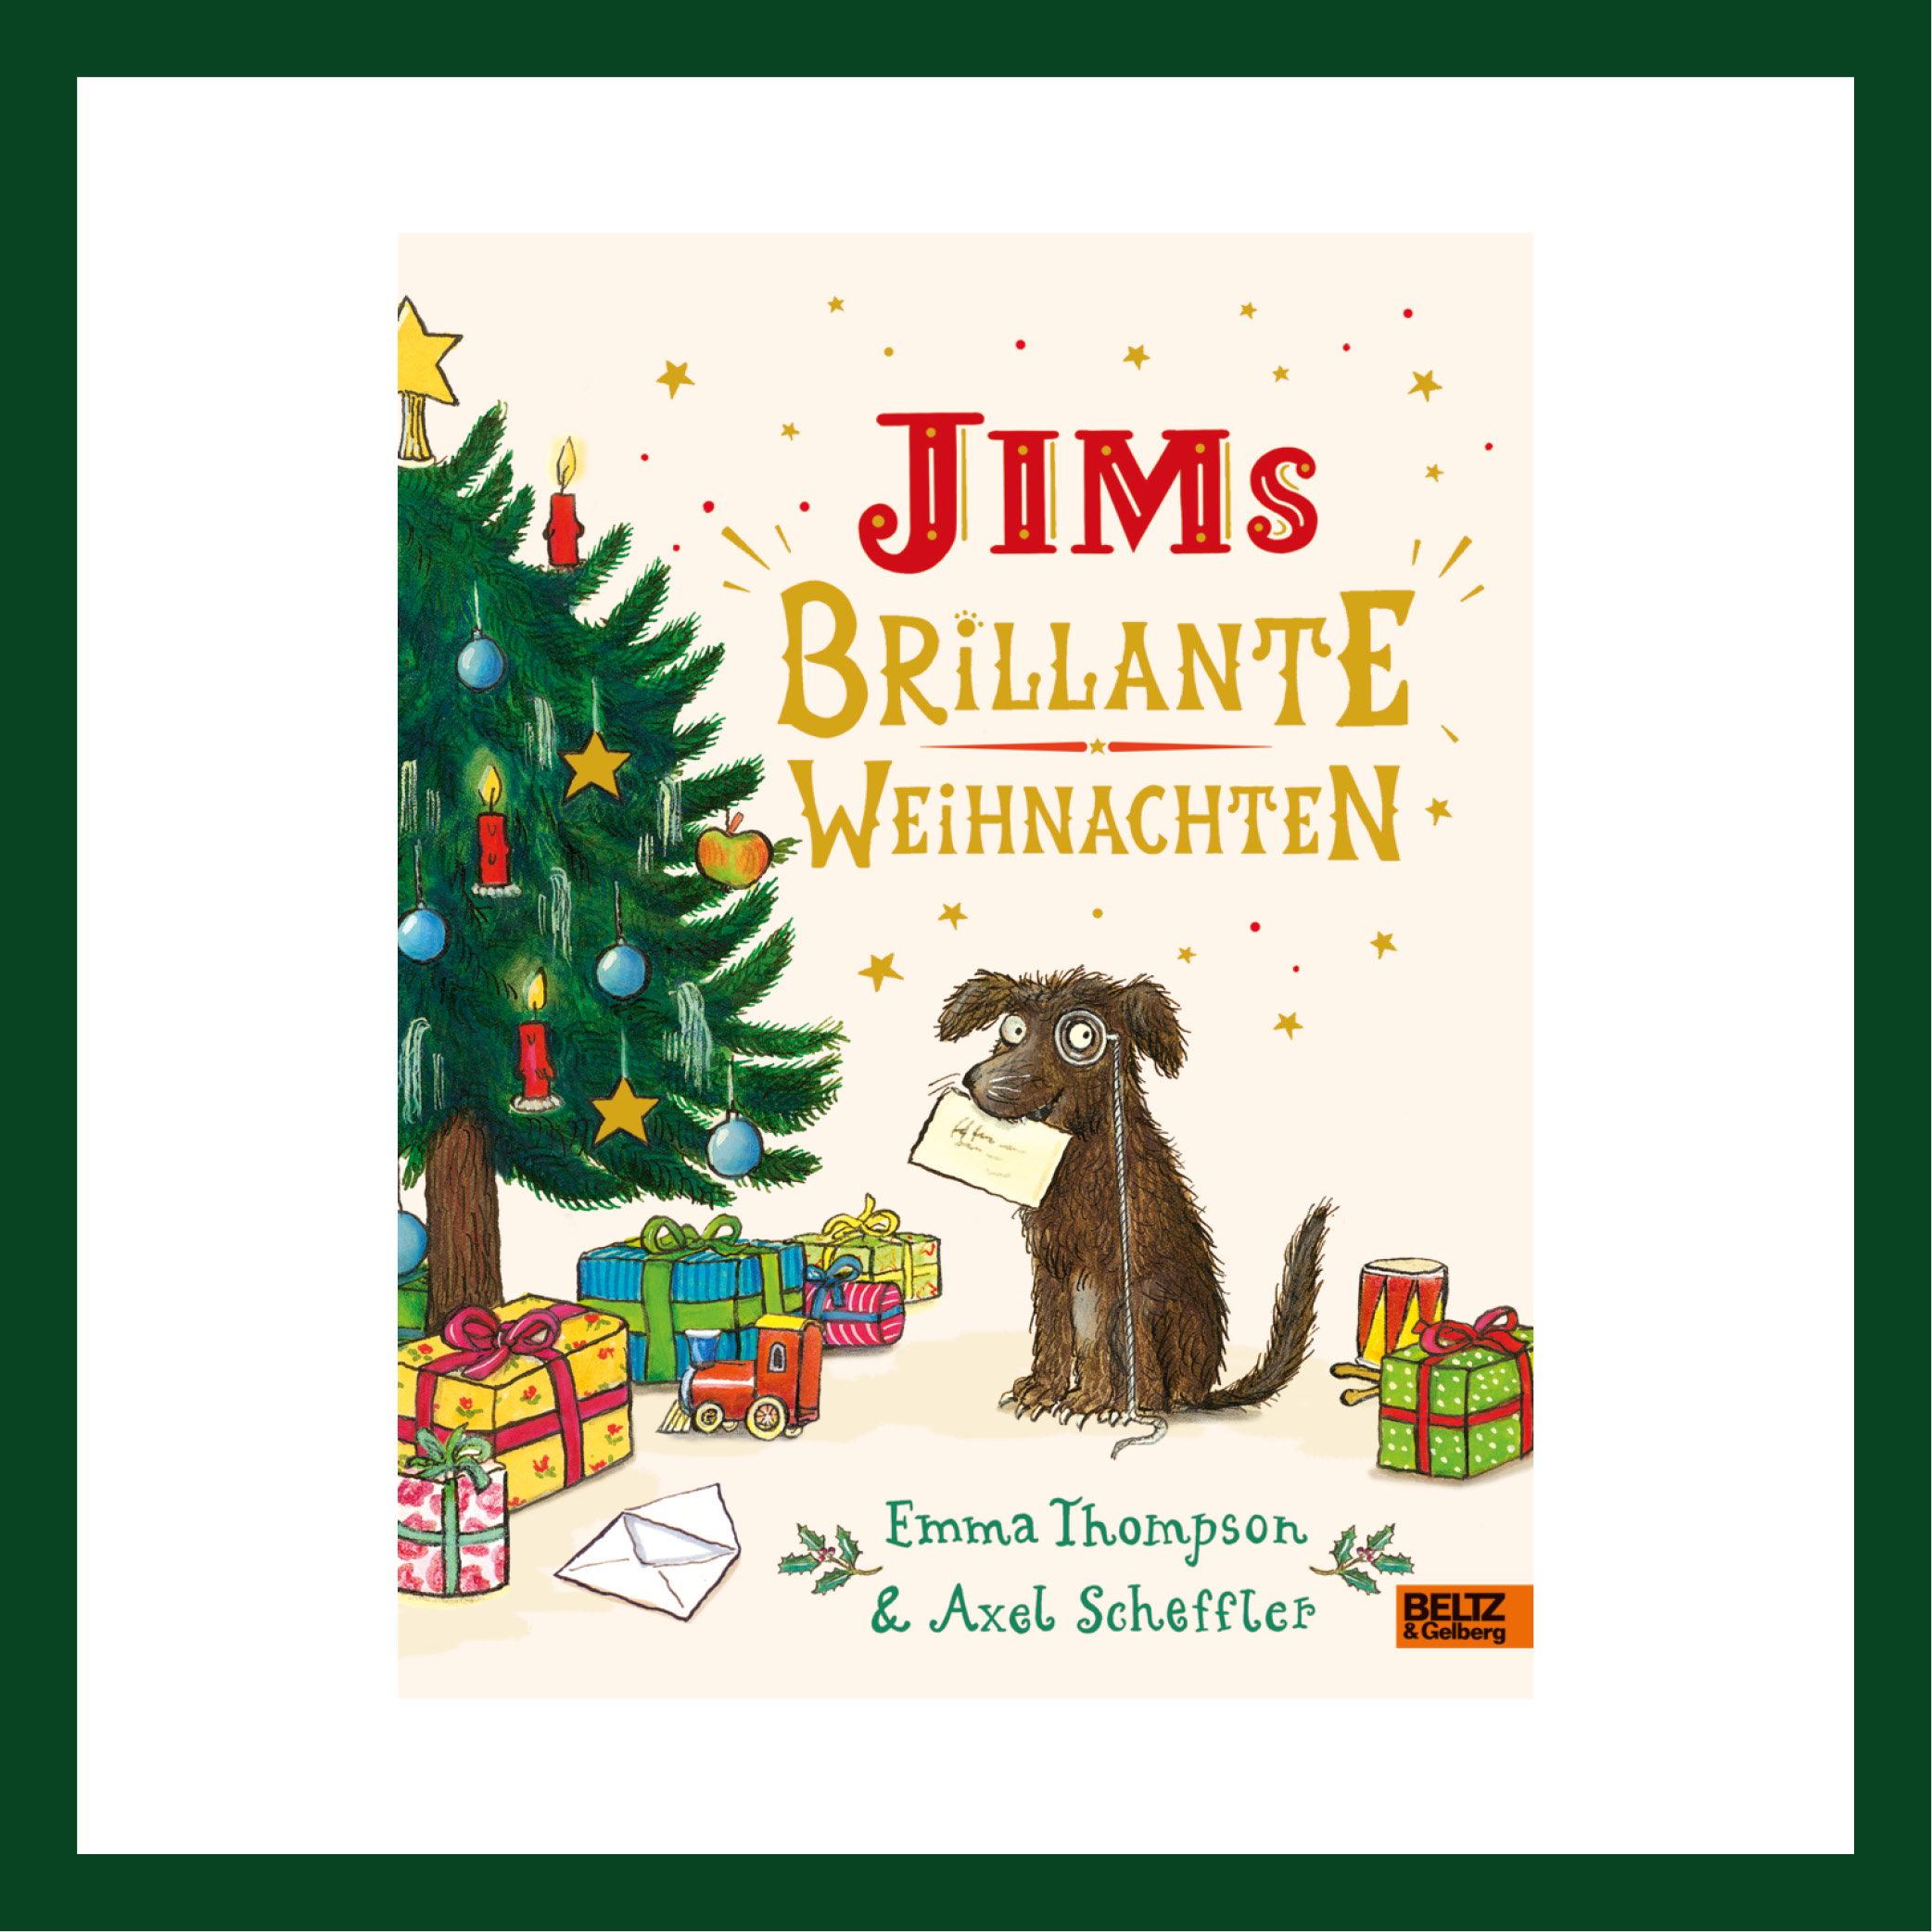 Jim's brillante Weihnachten